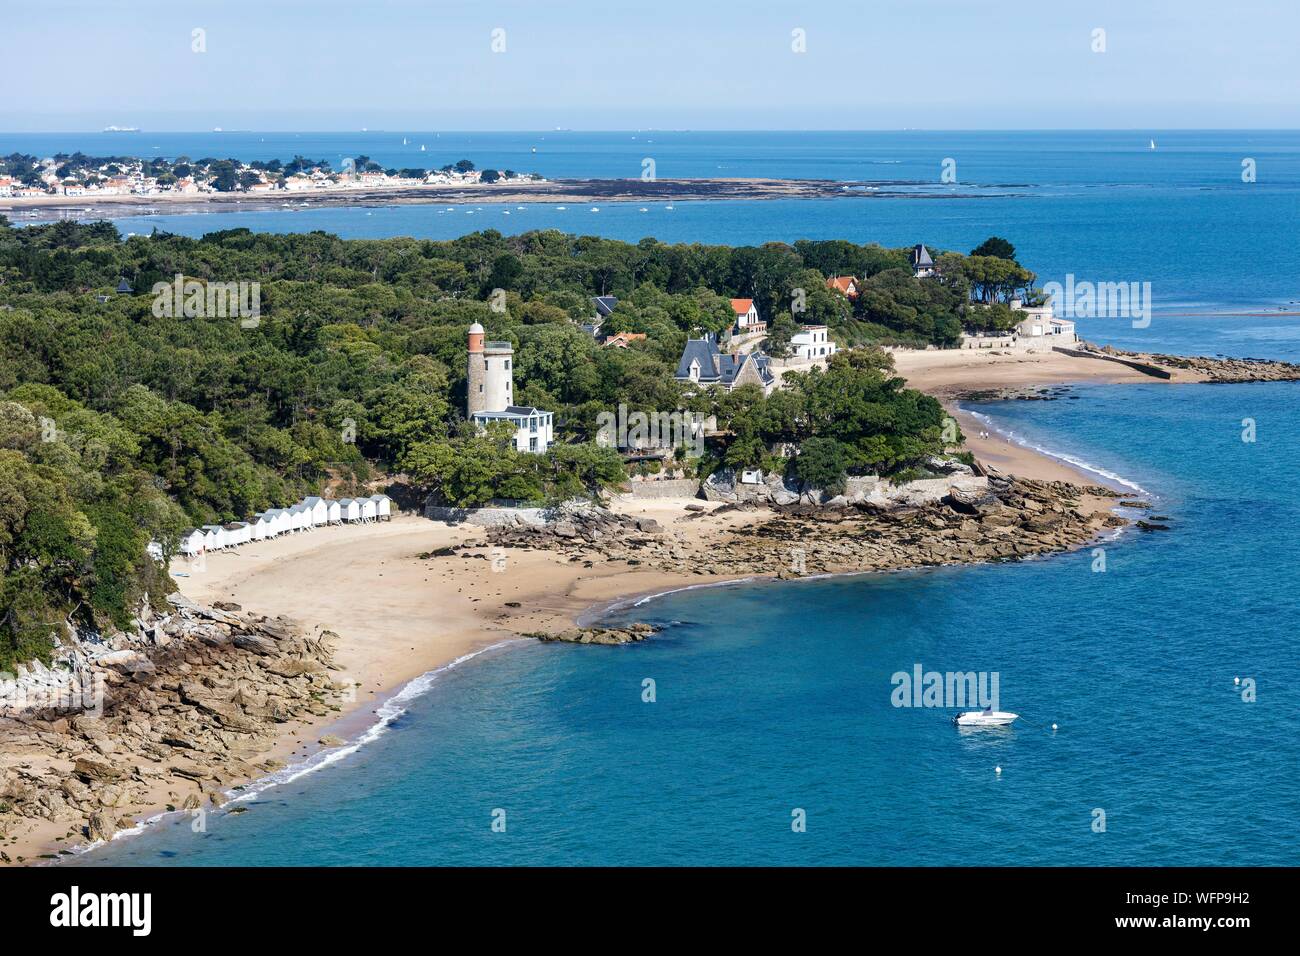 France, Vendee, Noirmoutier en l'Ile, L'Anse Rouge beach and Plantier tower (aerial view) Stock Photo